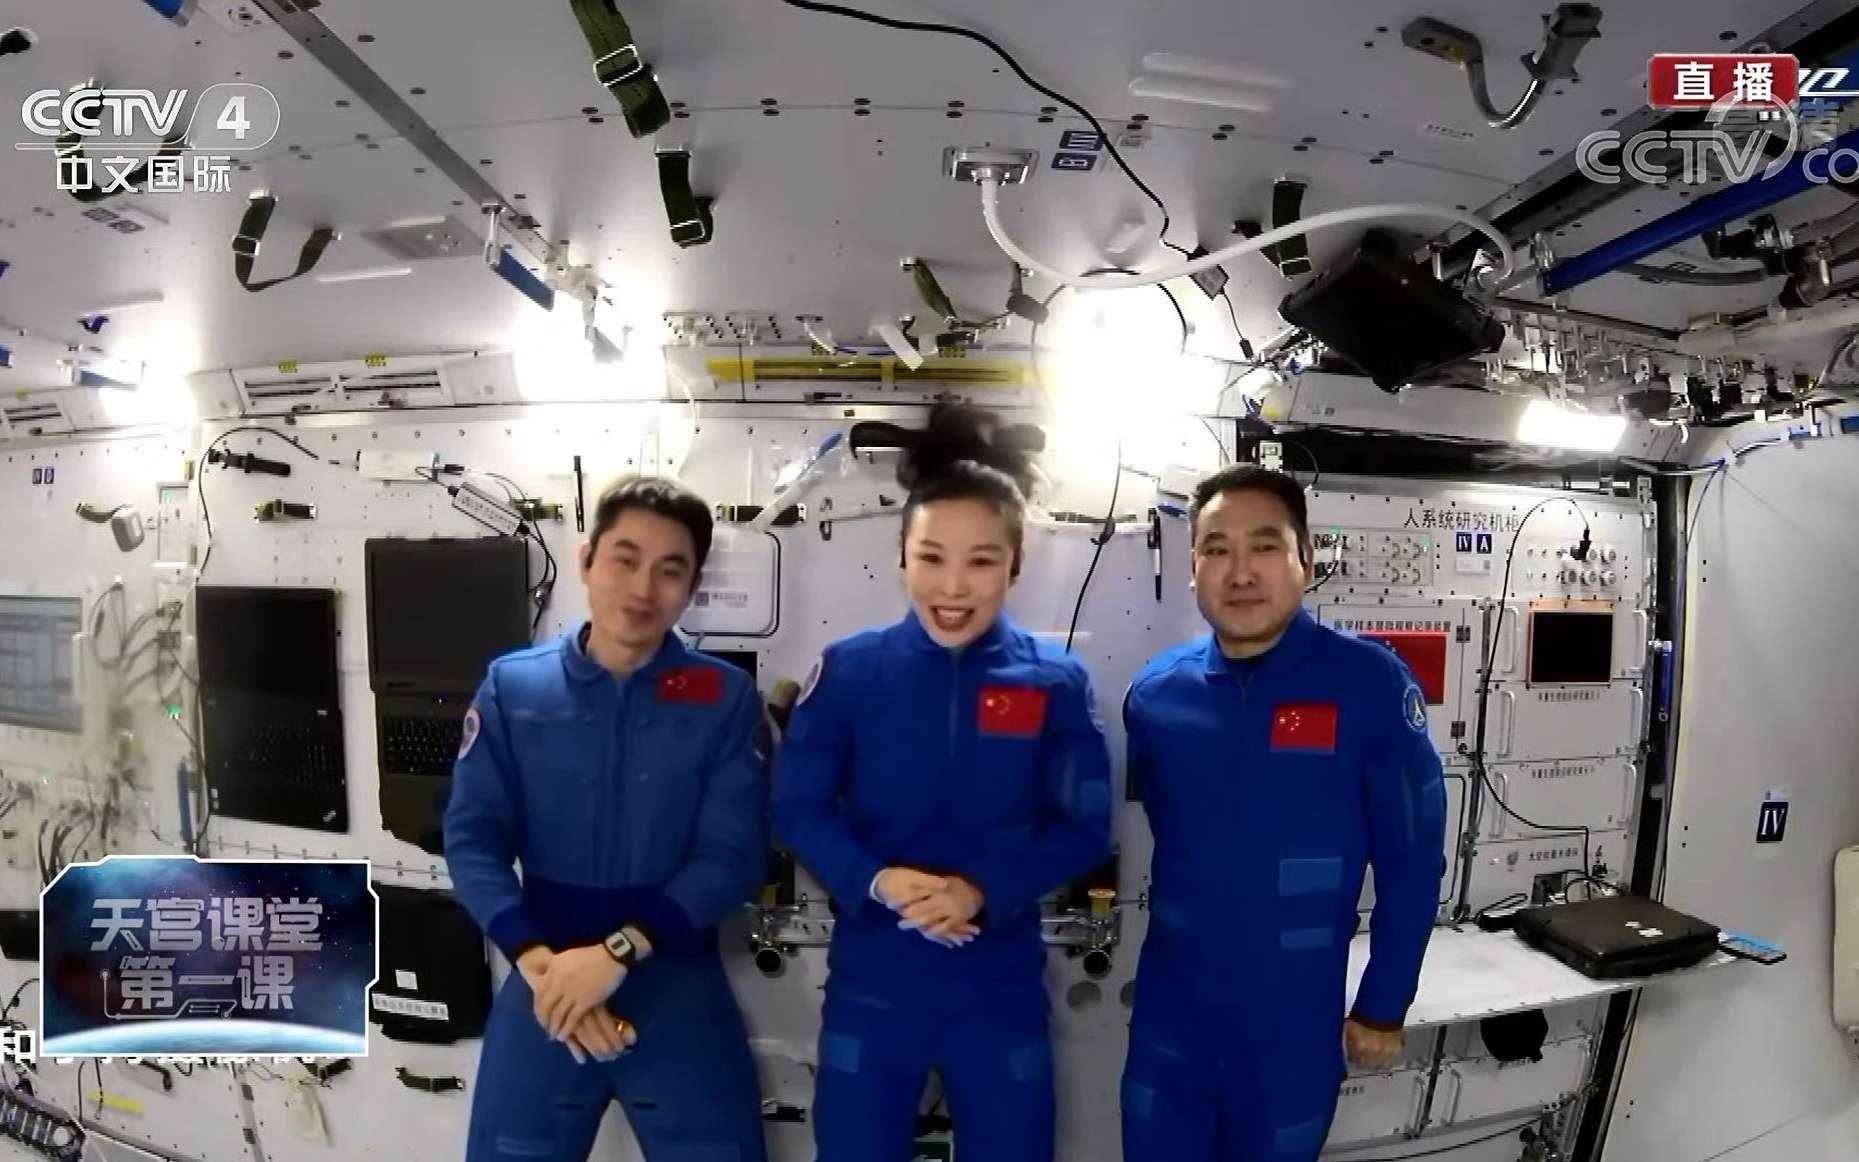 De gauche à droite : extraction des astronautes chinois Zhai Zhigang, Wang Yaping et Ye Guangfu de leur vaisseau. © Xinhua, Lian Zhen